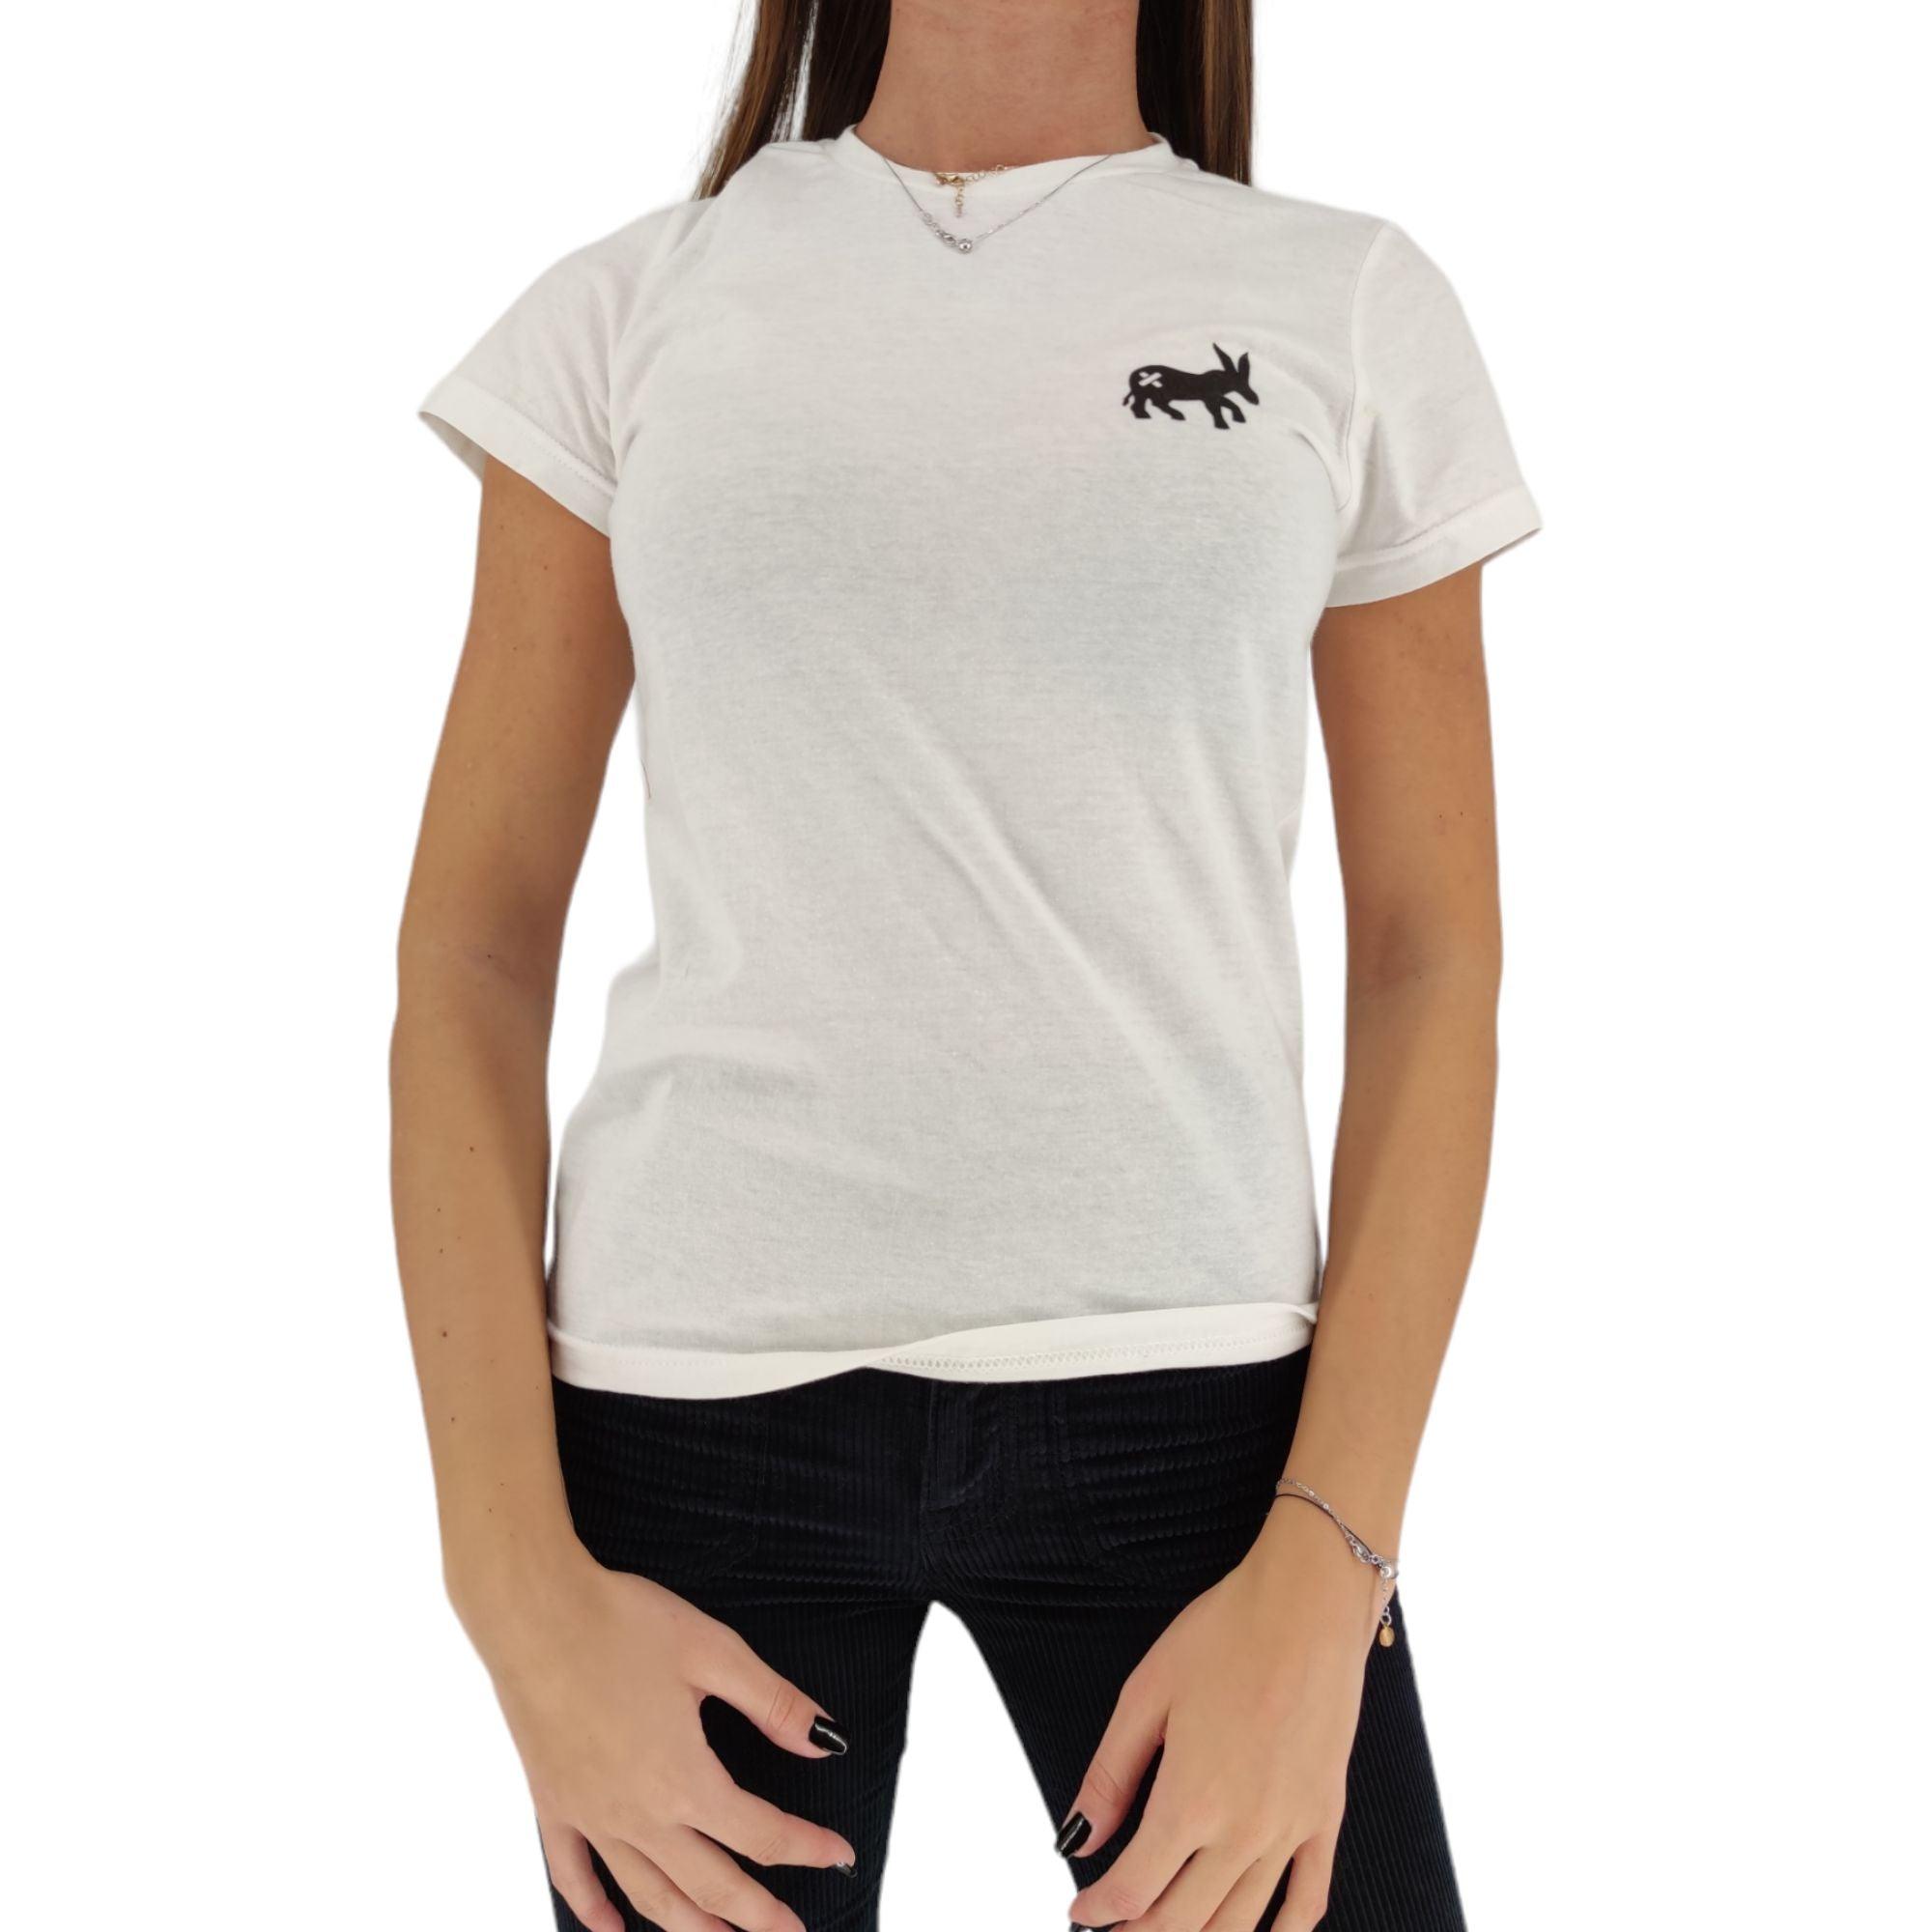 Sensa Cunisiun | T-shirt Classic Logo Donna White/Black - Fabbrica Ski Sises